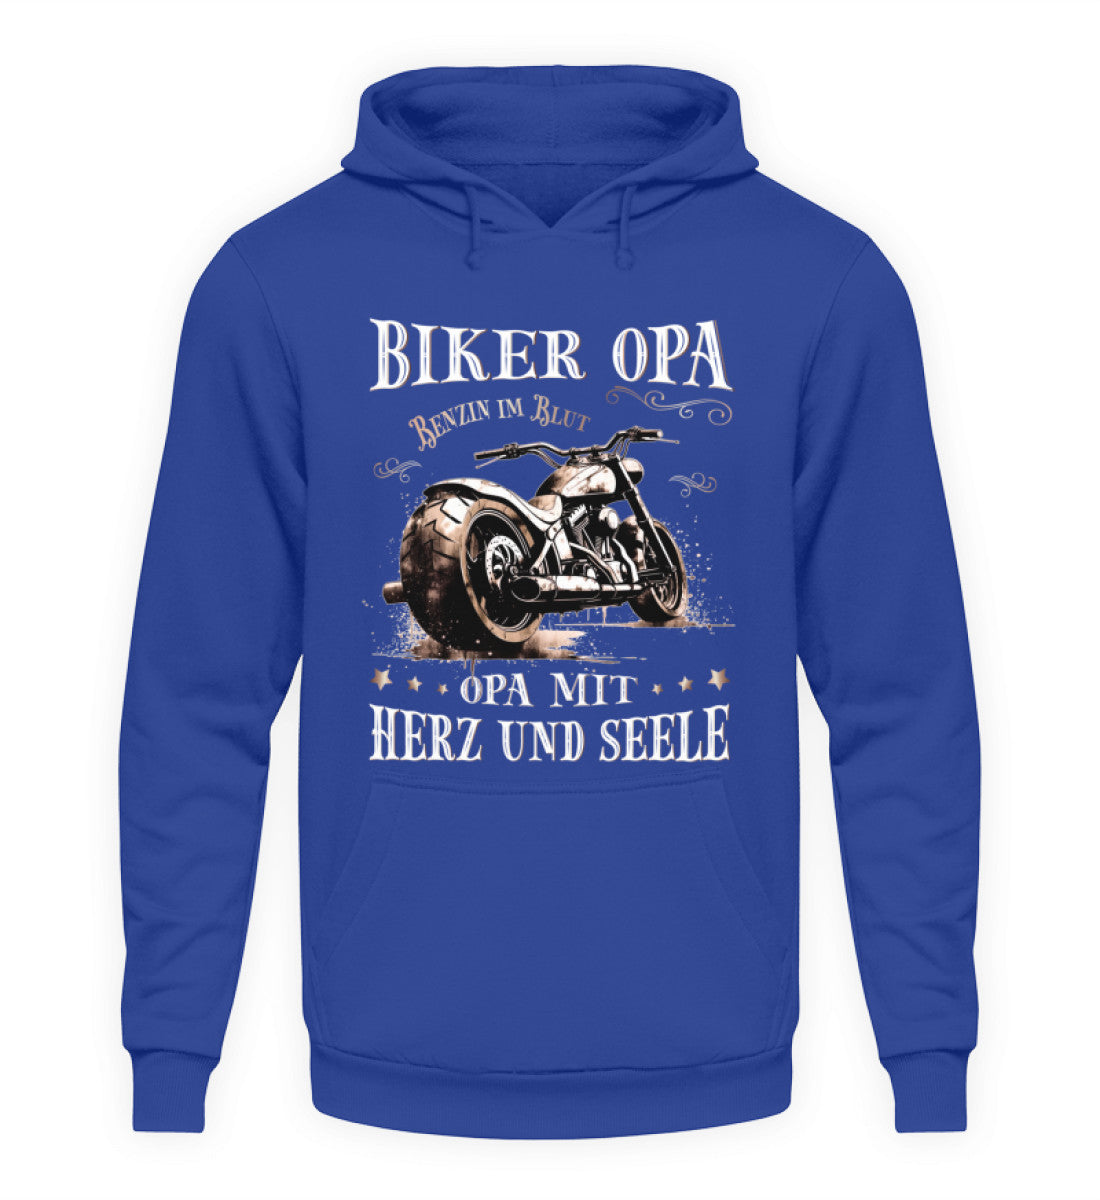 Ein Biker Hoodie für Motorradfahrer von Wingbikers mit dem Aufdruck, Biker Opa - Benzin im Blut - Opa mit Herz und Seele, in royal blau.